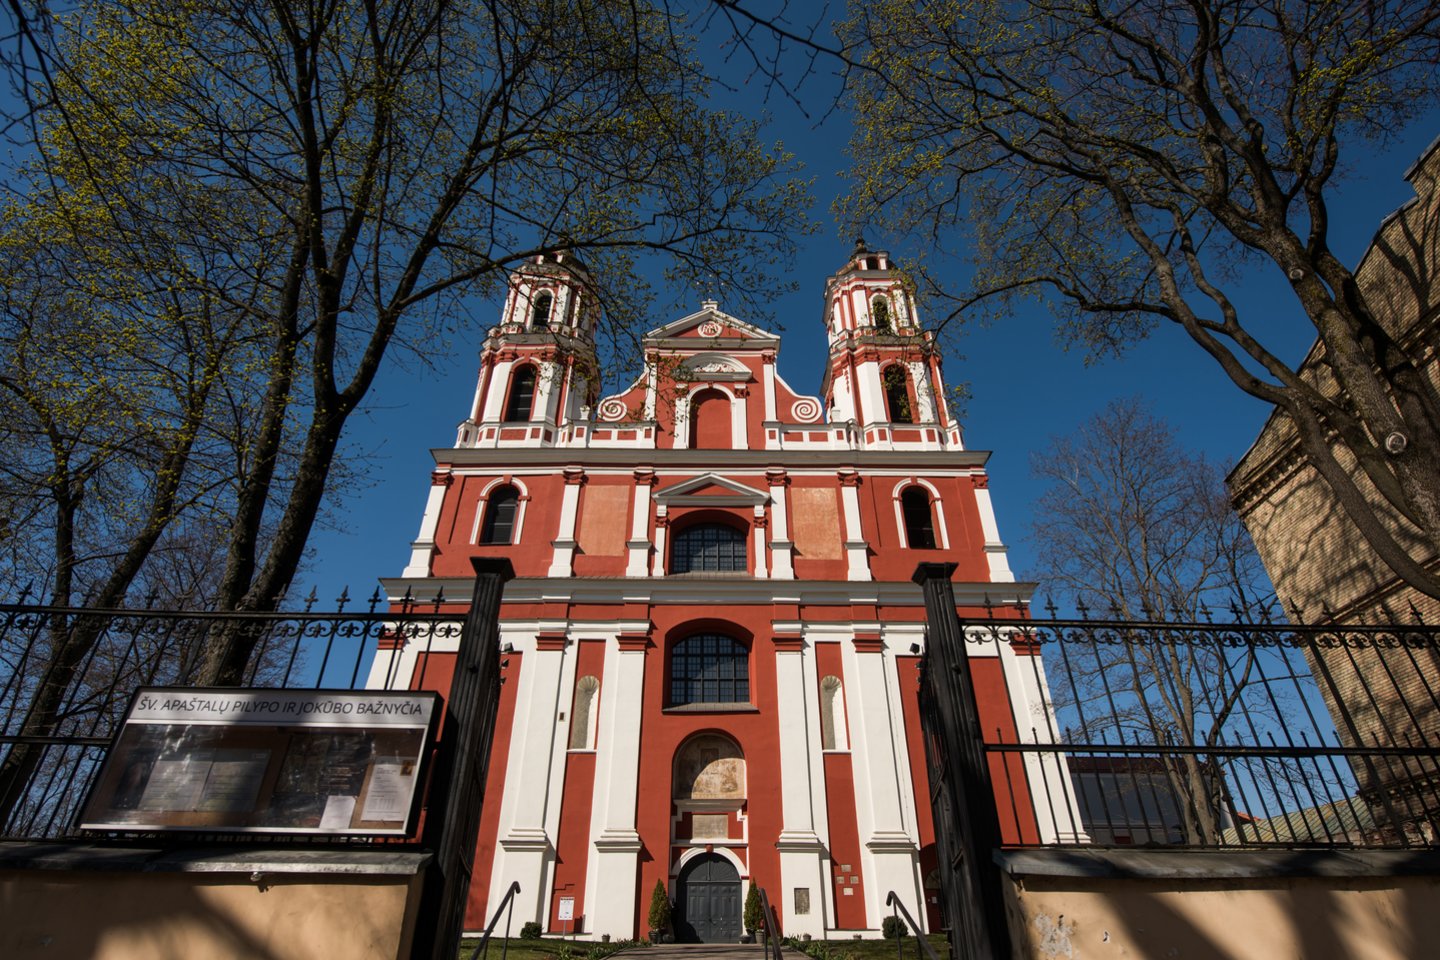 Vilniuje, šalia Lukiškių aikštės esanti Šv. apaštalų Jokūbo ir Pilypo bažnyčios, dominikonų vienuolyno ansamblio bei jau daugiau kaip du dešimtmečiai apleistos buvusios Šv. Jokūbo ligoninės teritorija ypatinga.<br>D.Umbraso nuotr.